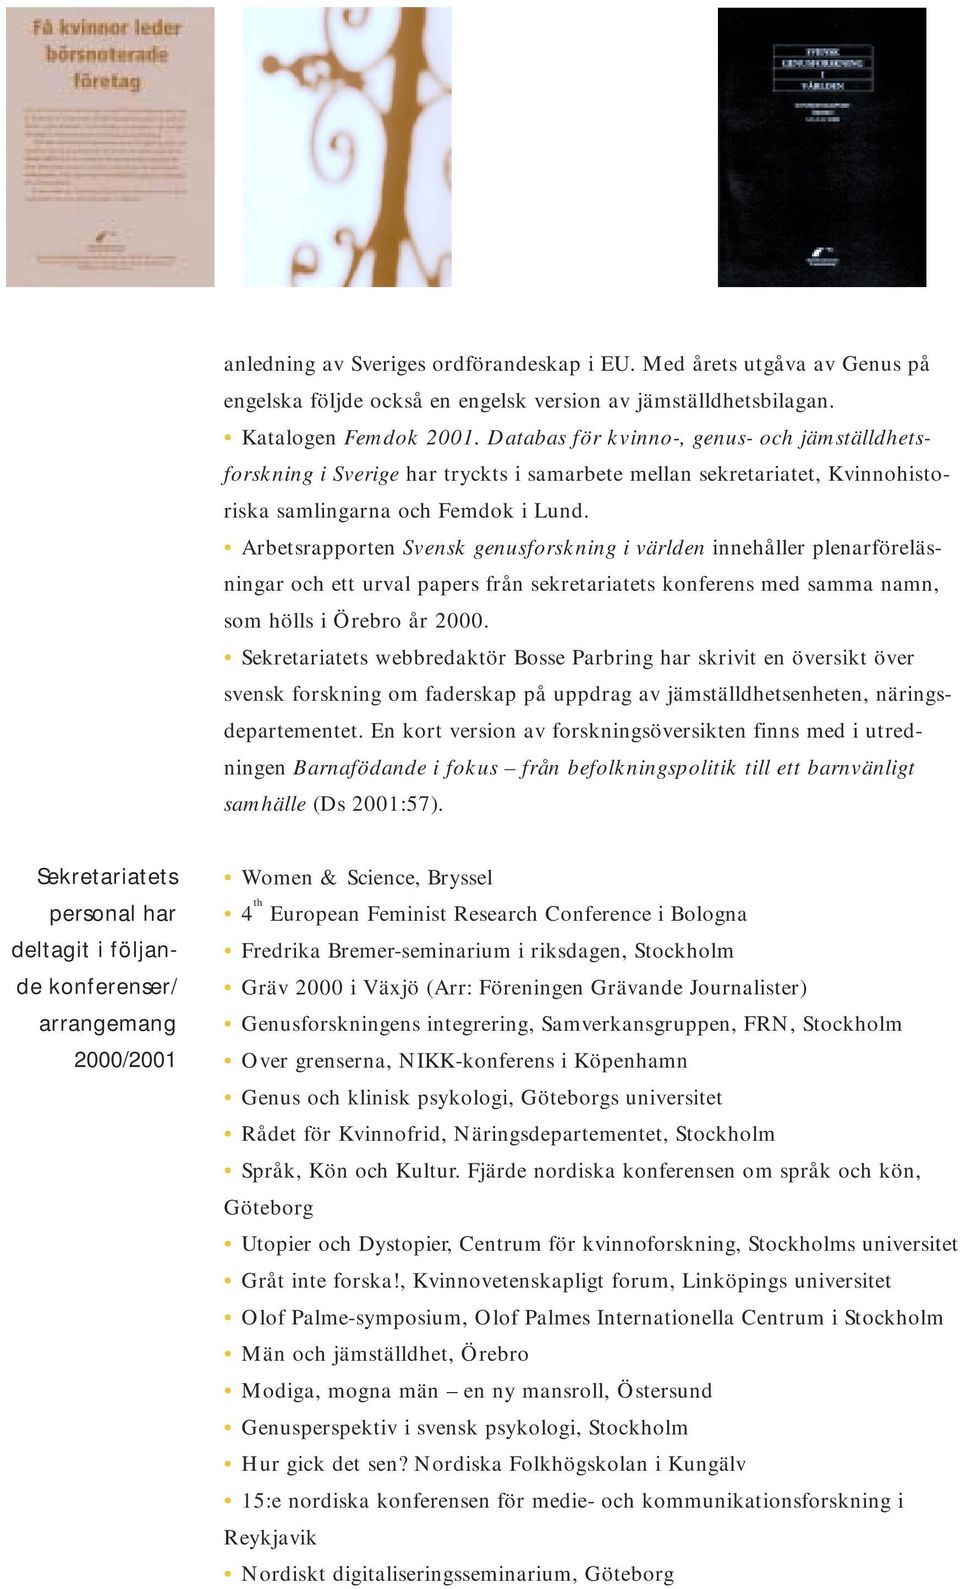 Arbetsrapporten Svensk genusforskning i världen innehåller plenarföreläsningar och ett urval papers från sekretariatets konferens med samma namn, som hölls i Örebro år 2000.